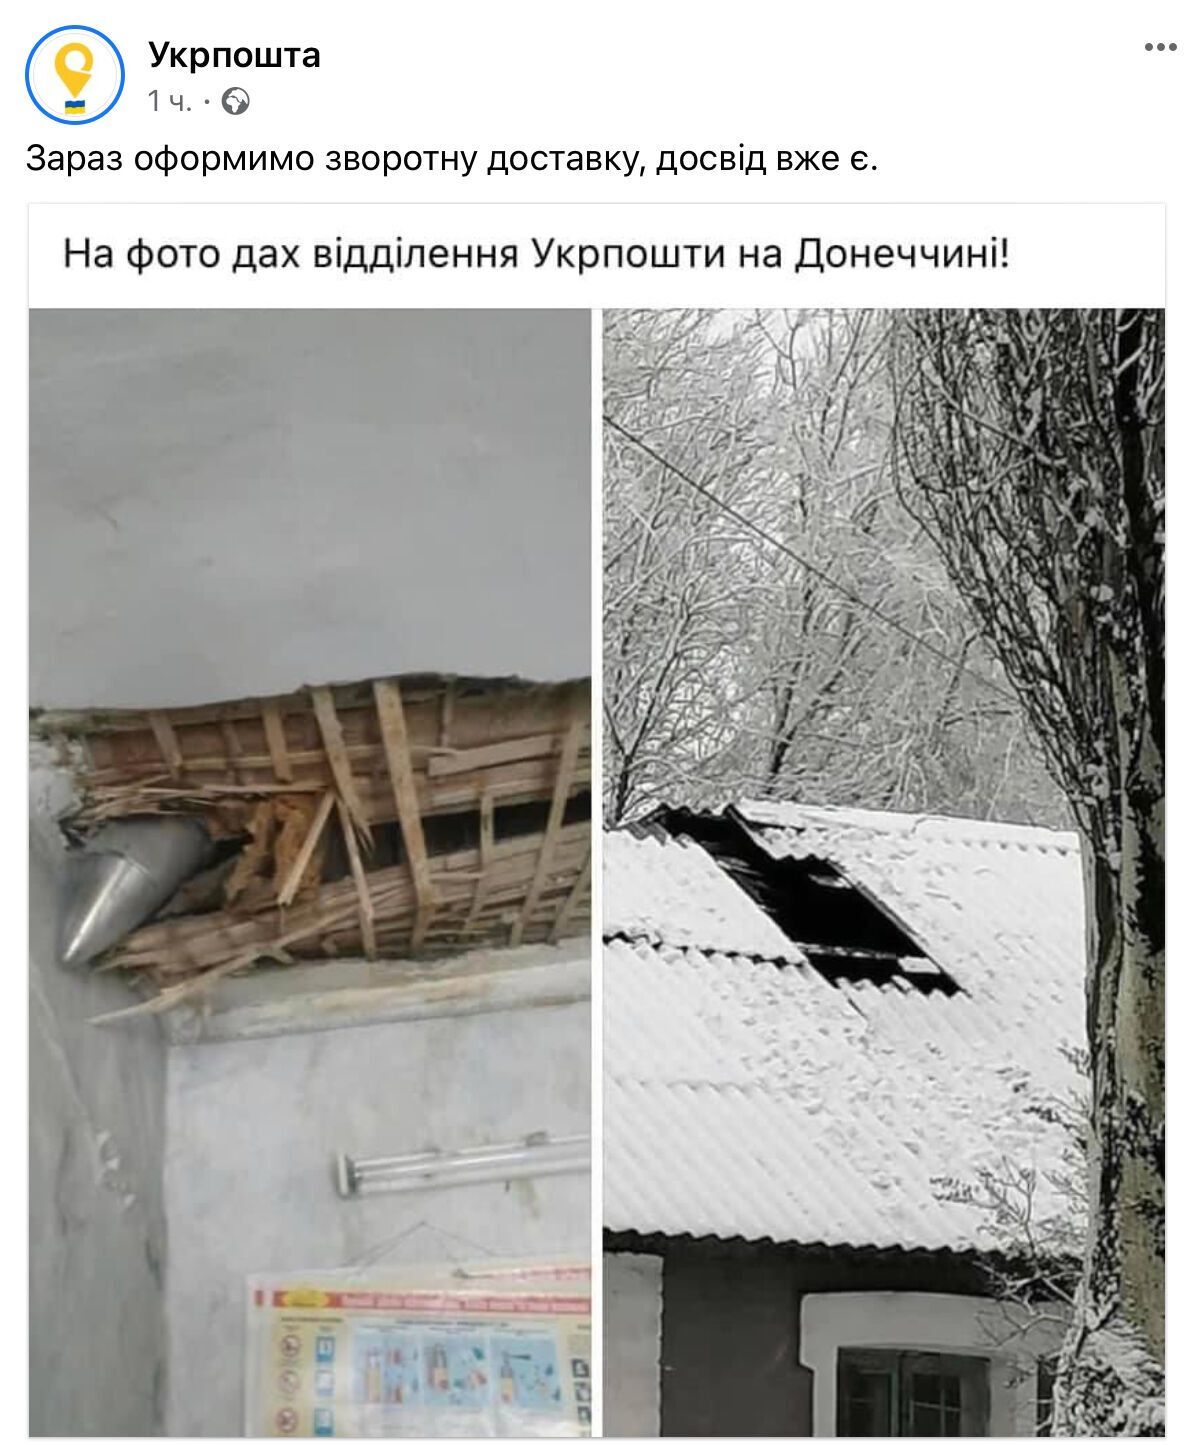 Пошкоджена будівля Укрпошти.